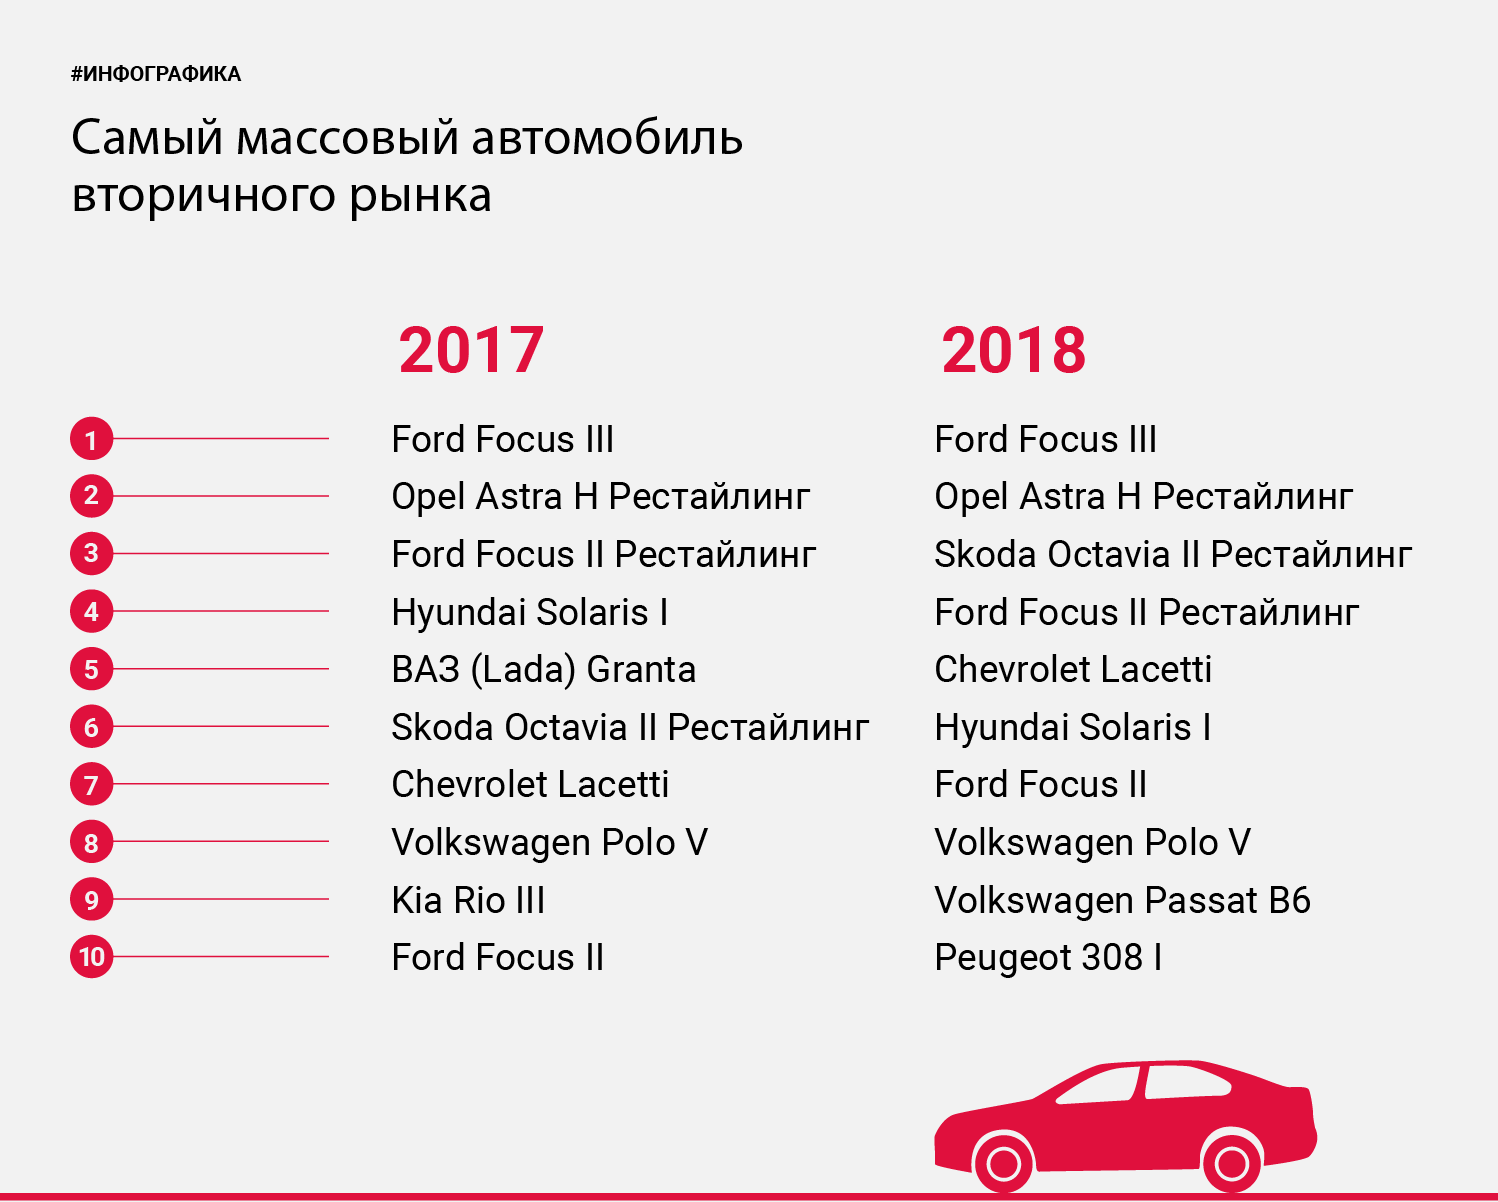 Лучшие российские автомобили по надёжности в 2020 году